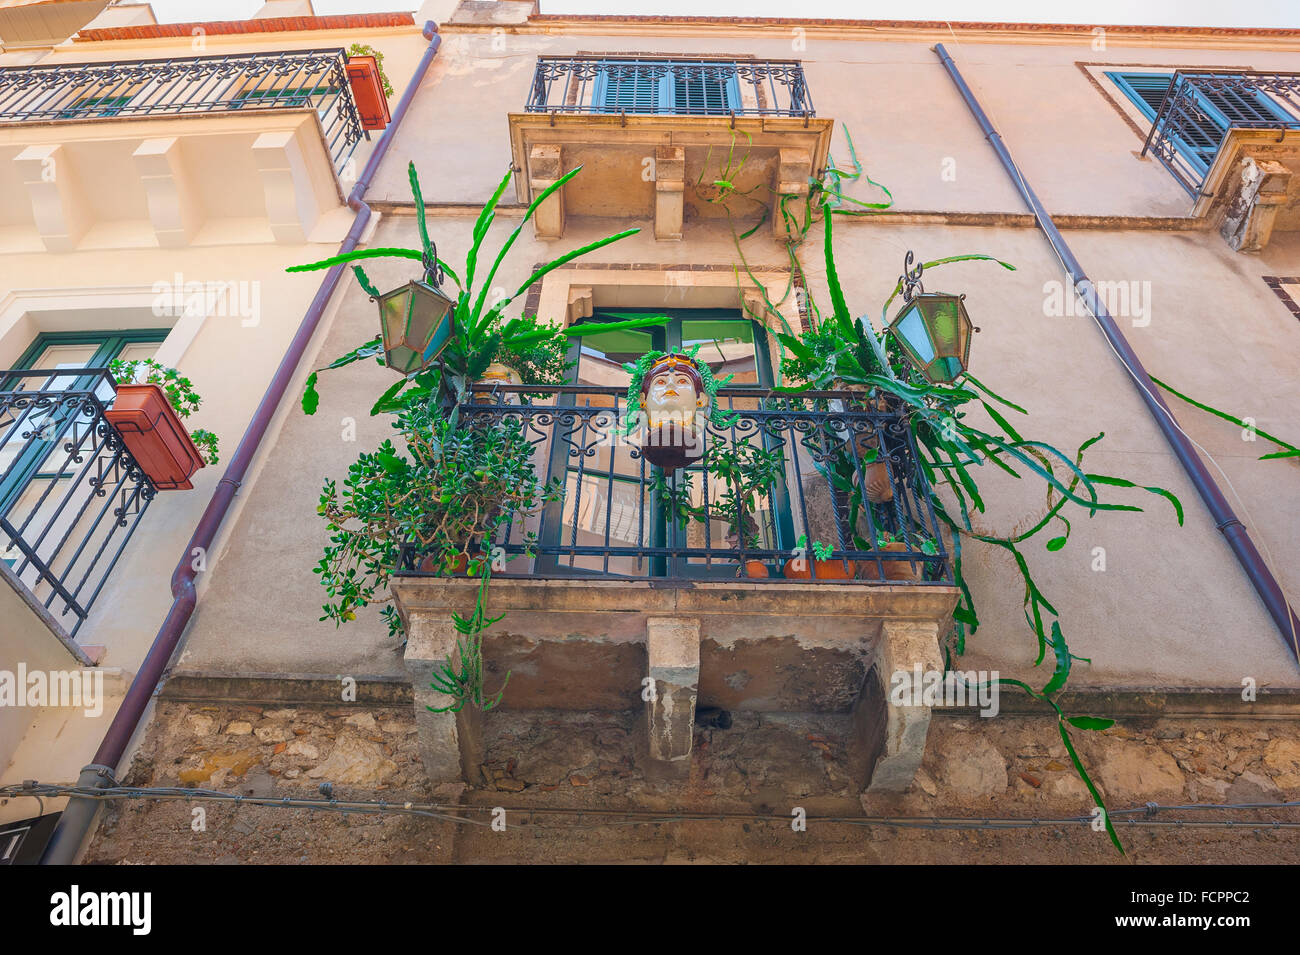 Taormina Balkon, Blick auf eine bunte Ausstellung von Pflanzen und Keramik auf einem Apartment Balkon in einer Straße in der historischen Stadt Taormina, Sizilien. Stockfoto